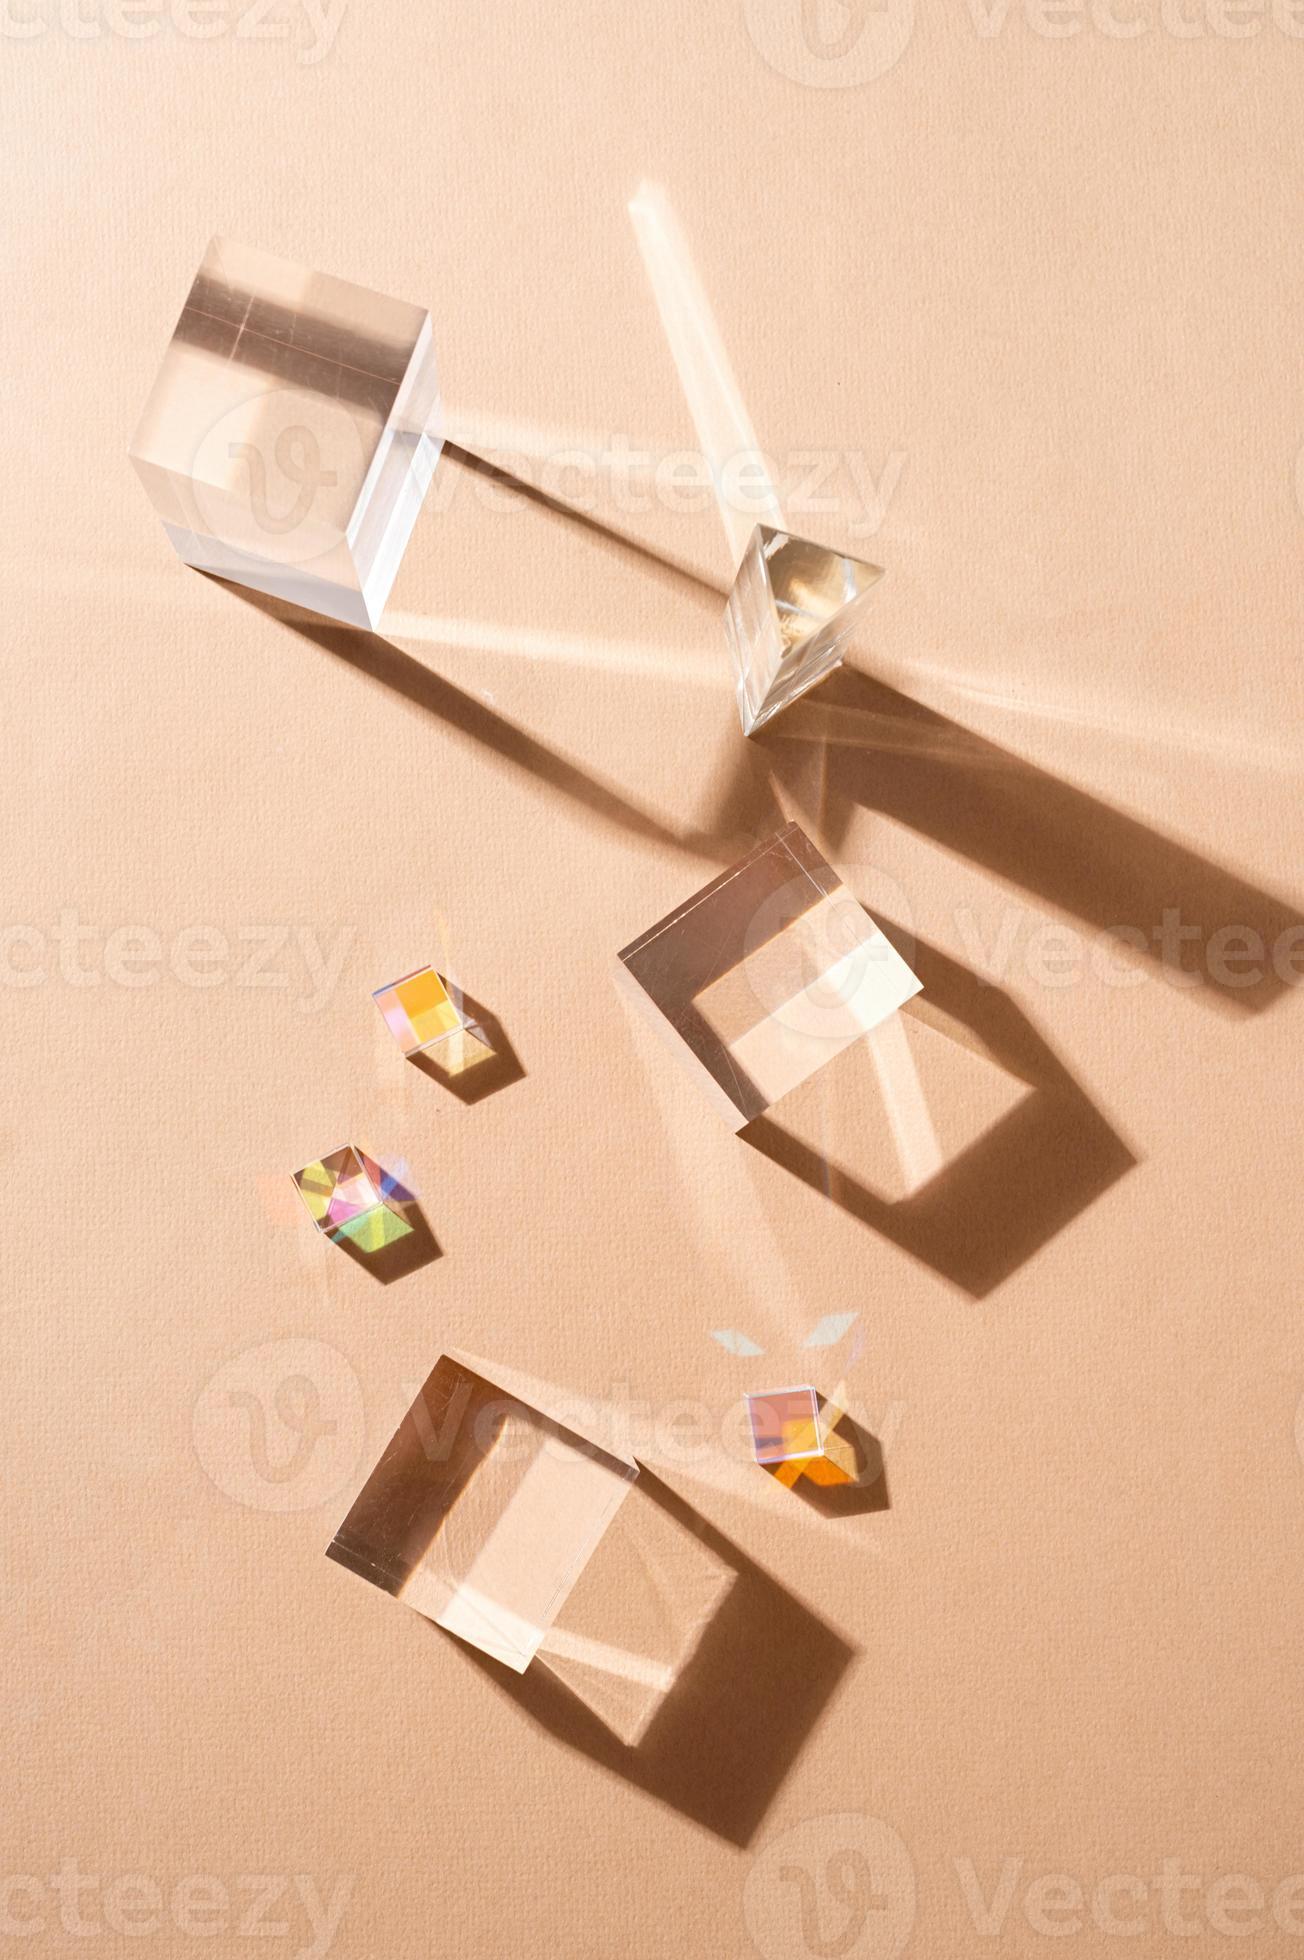 bedriegen Abnormaal Continu glas prisma's reflecteren licht maken mooi schaduwen Aan beige achtergrond  18120642 Stockfoto